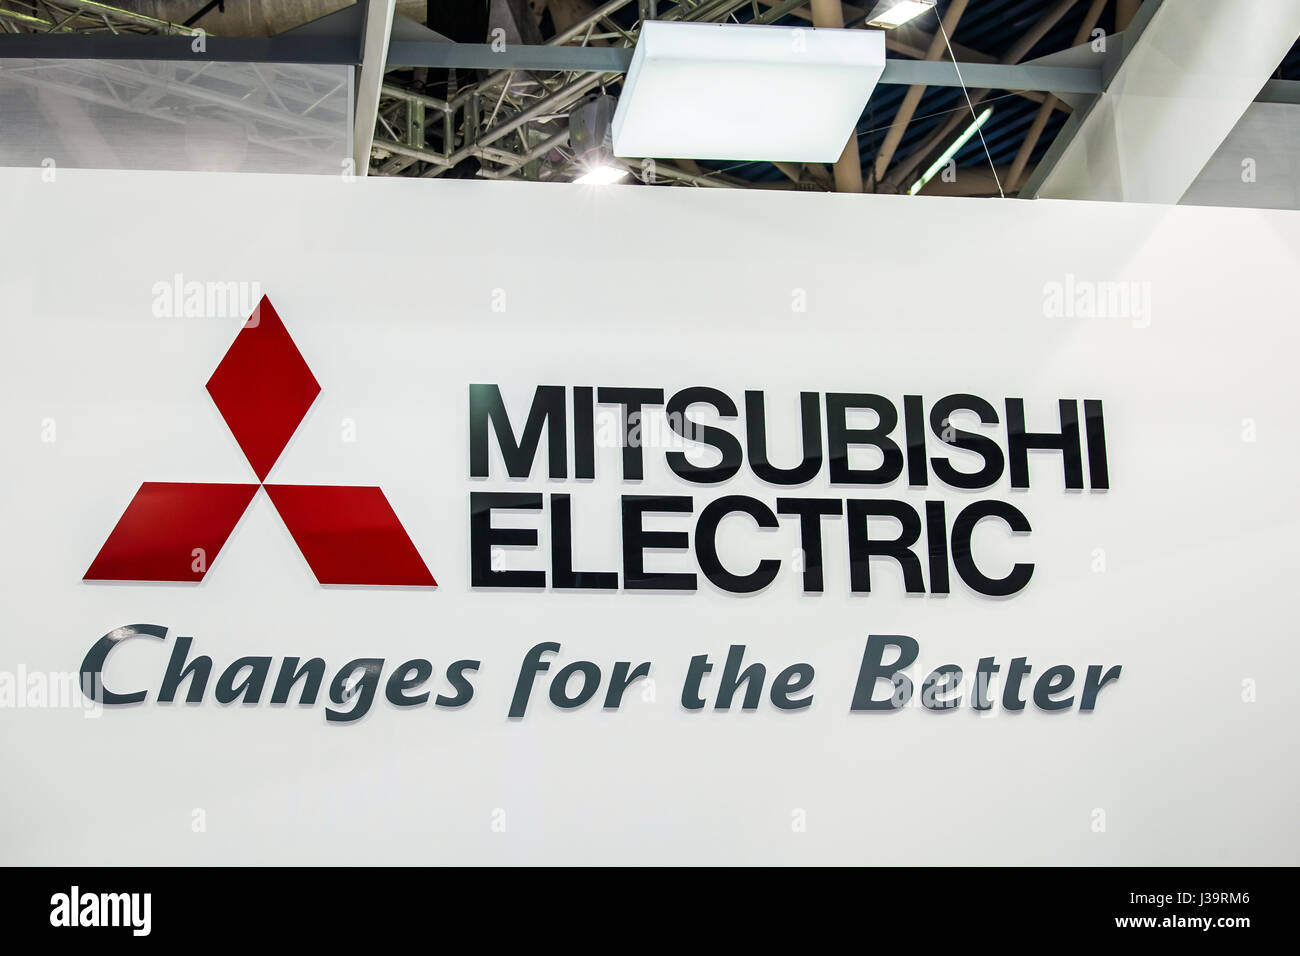 Mitsubishi Electric company logo sur le mur. Groupe Mitsubishi d'entreprises multinationales japonaises dans une variété d'industries Banque D'Images